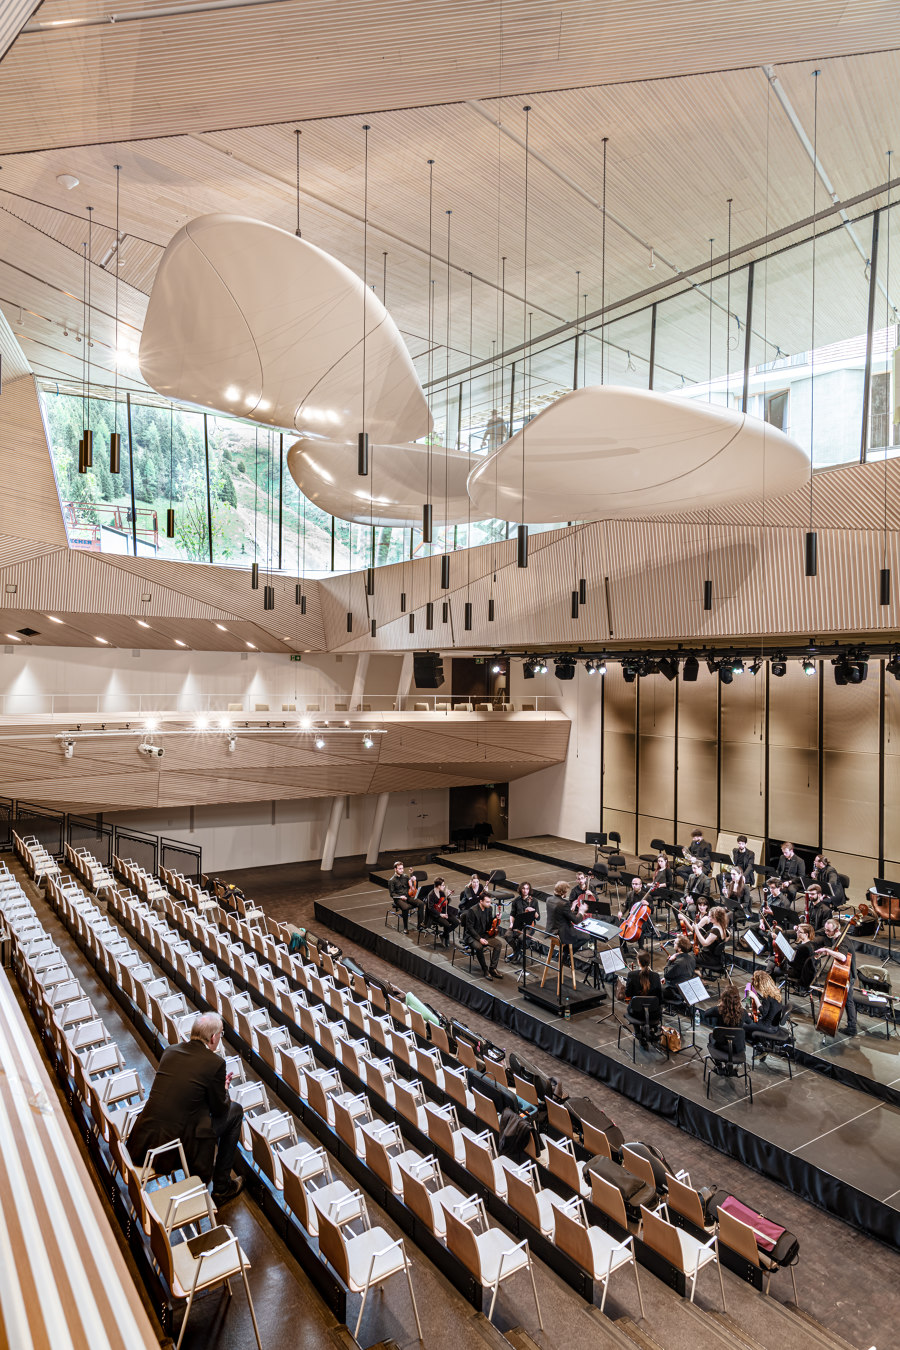 Andermatt Concert Hall de Studio Seilern Architects | Salas de conciertos